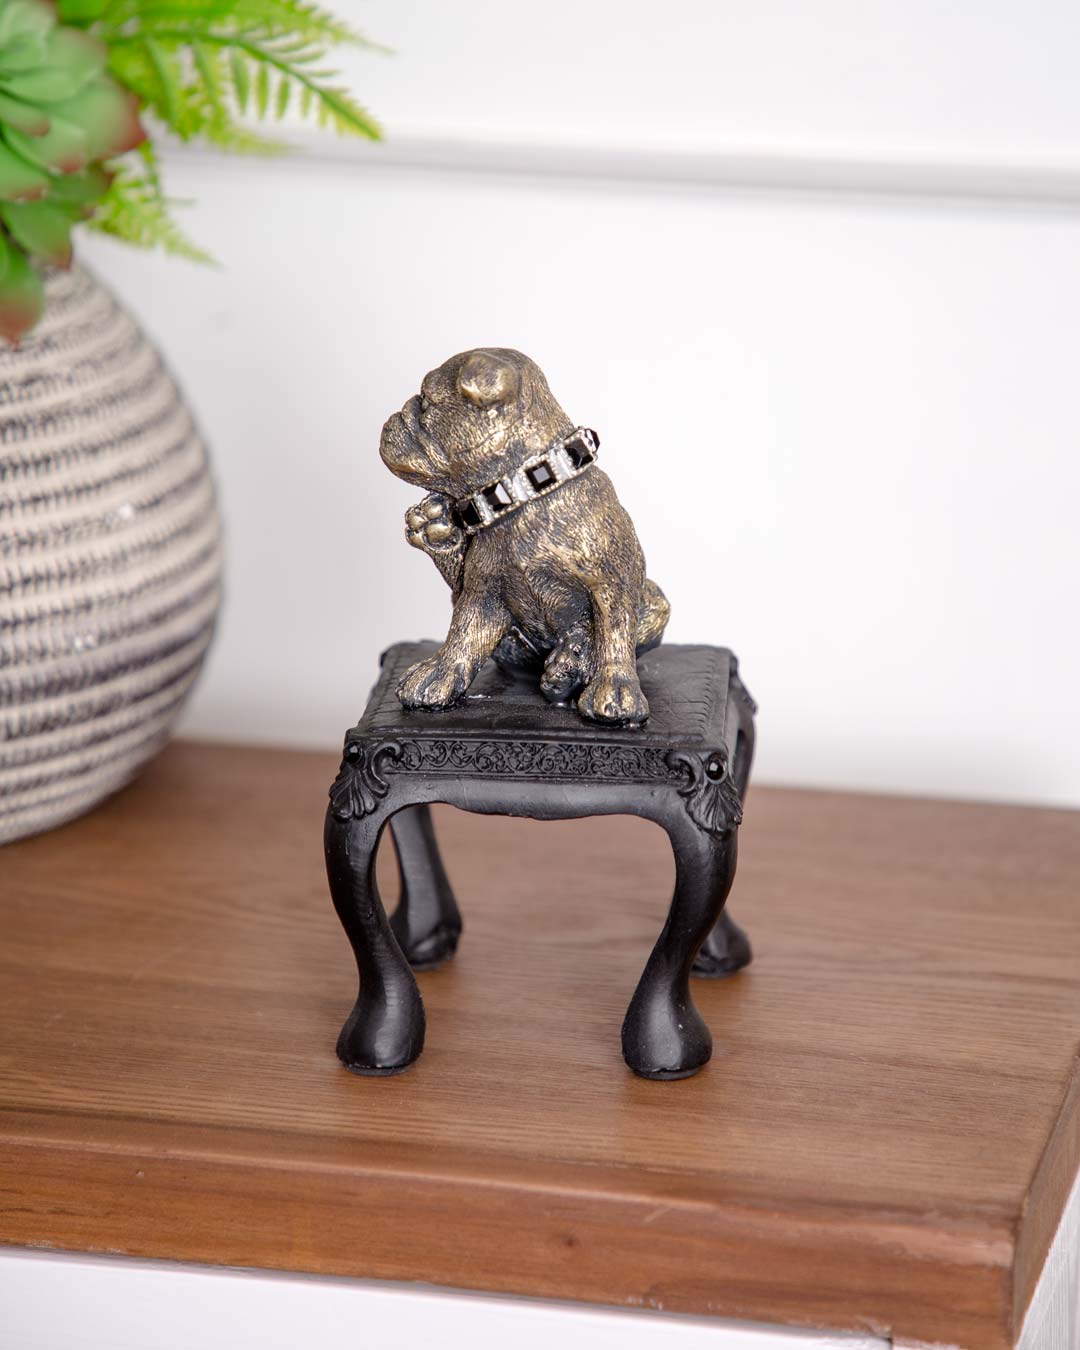 Adorable Pug on Chair